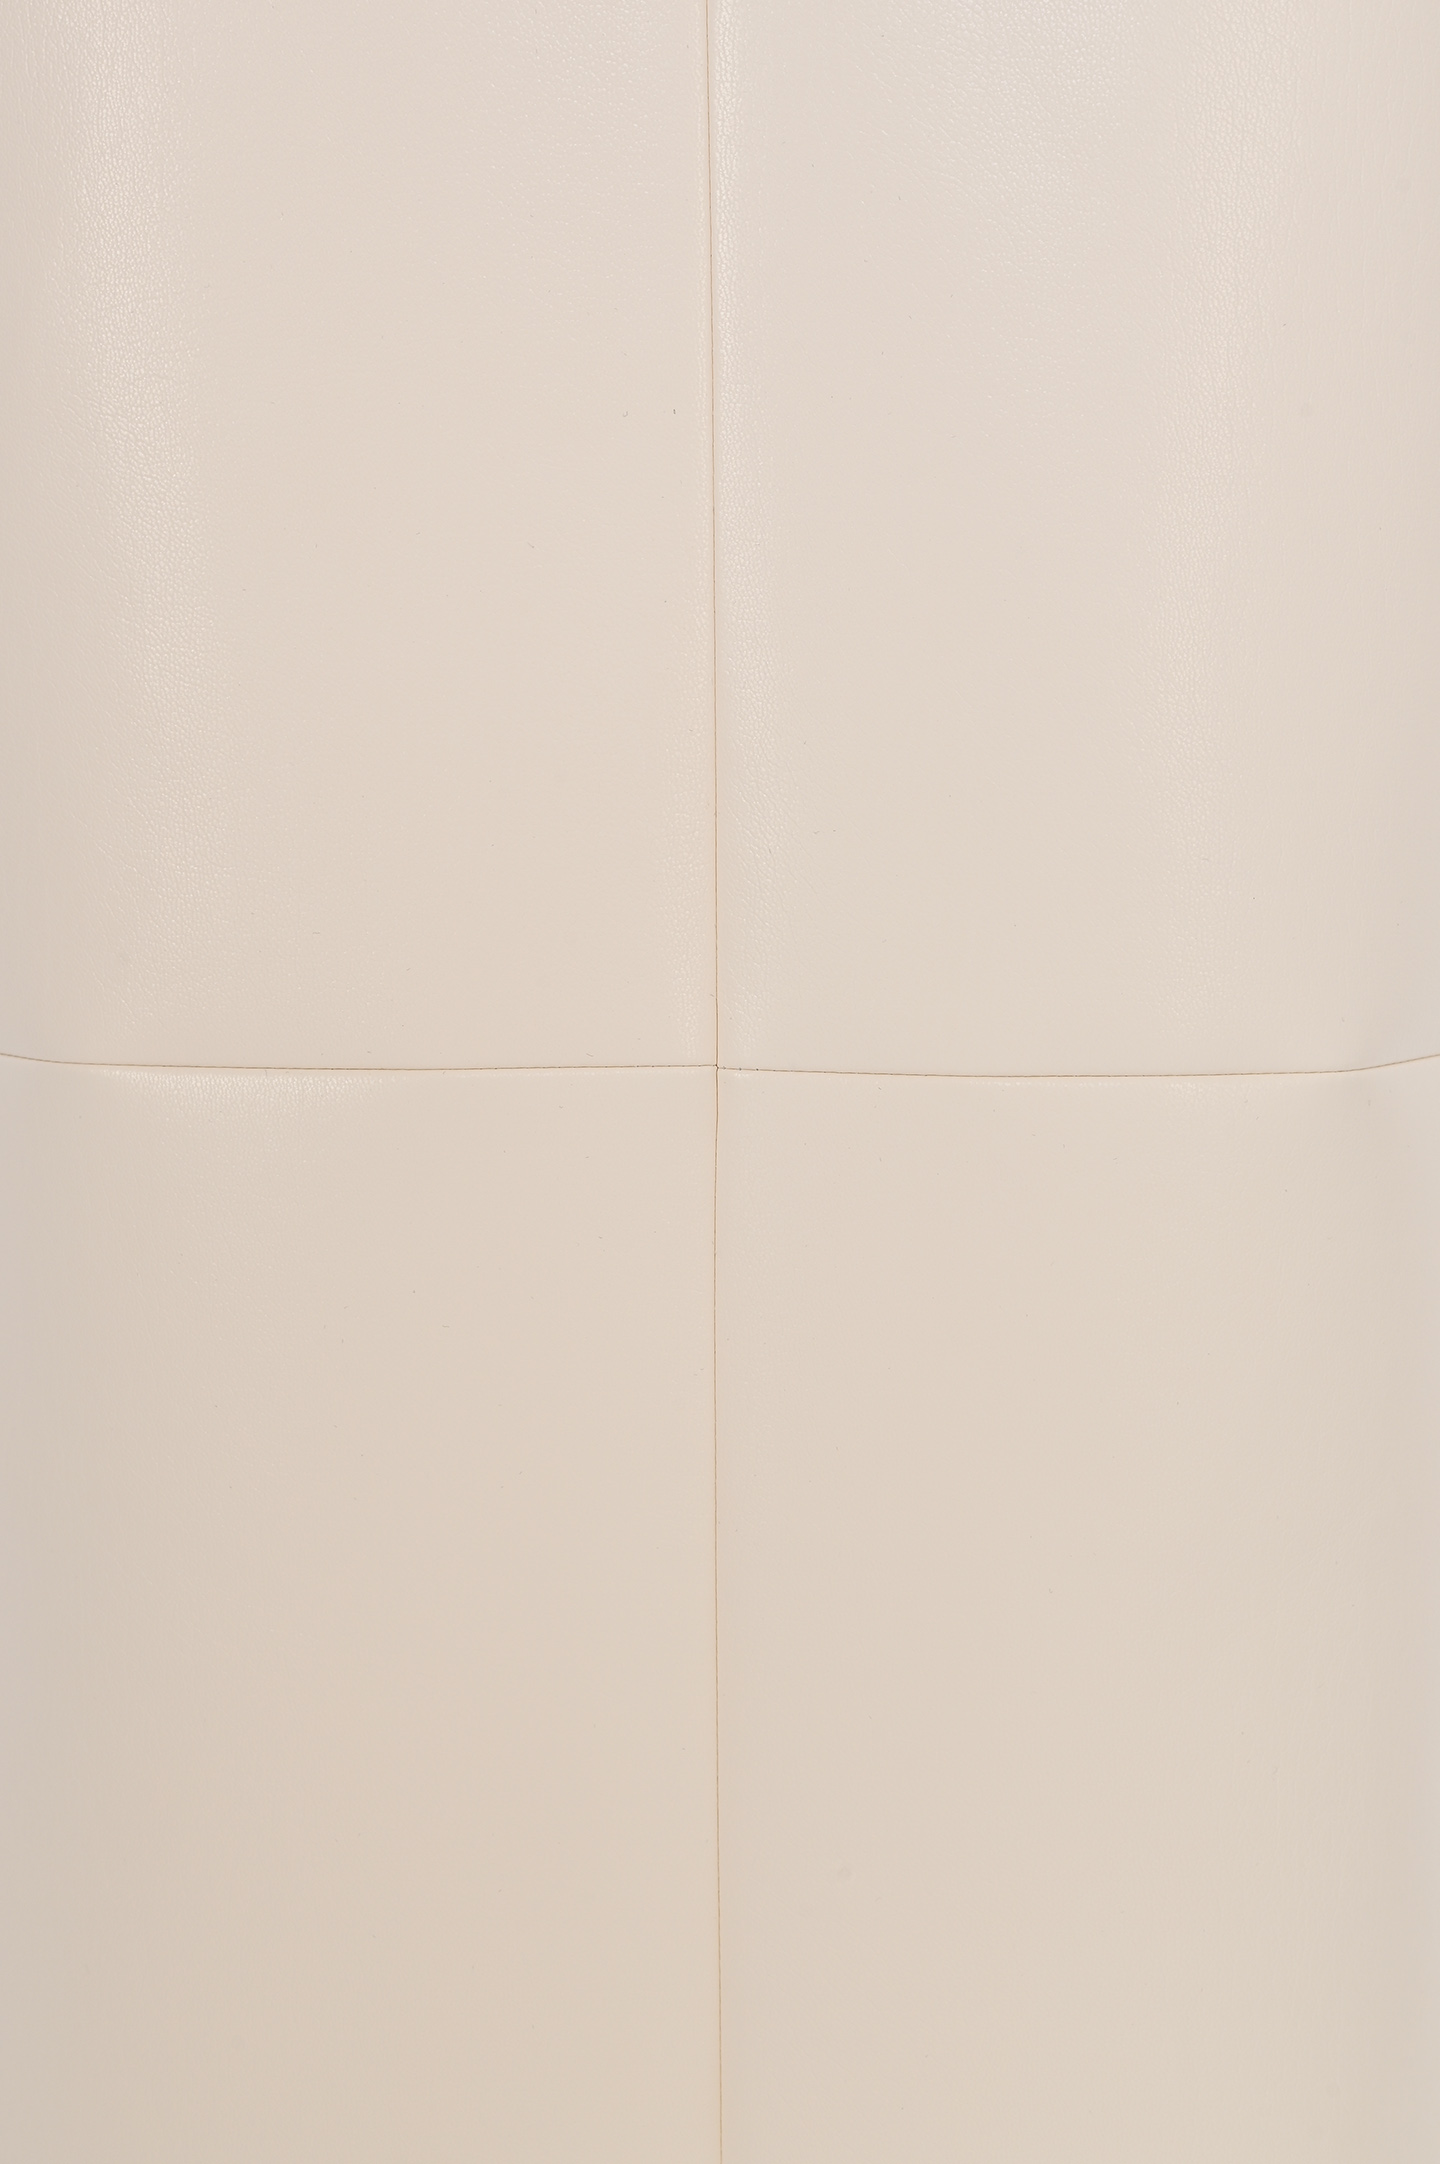 Юбка с принтом геометрия PHILOSOPHY DI LORENZO SERAFINI A0112 740, цвет: Молочный, Женский